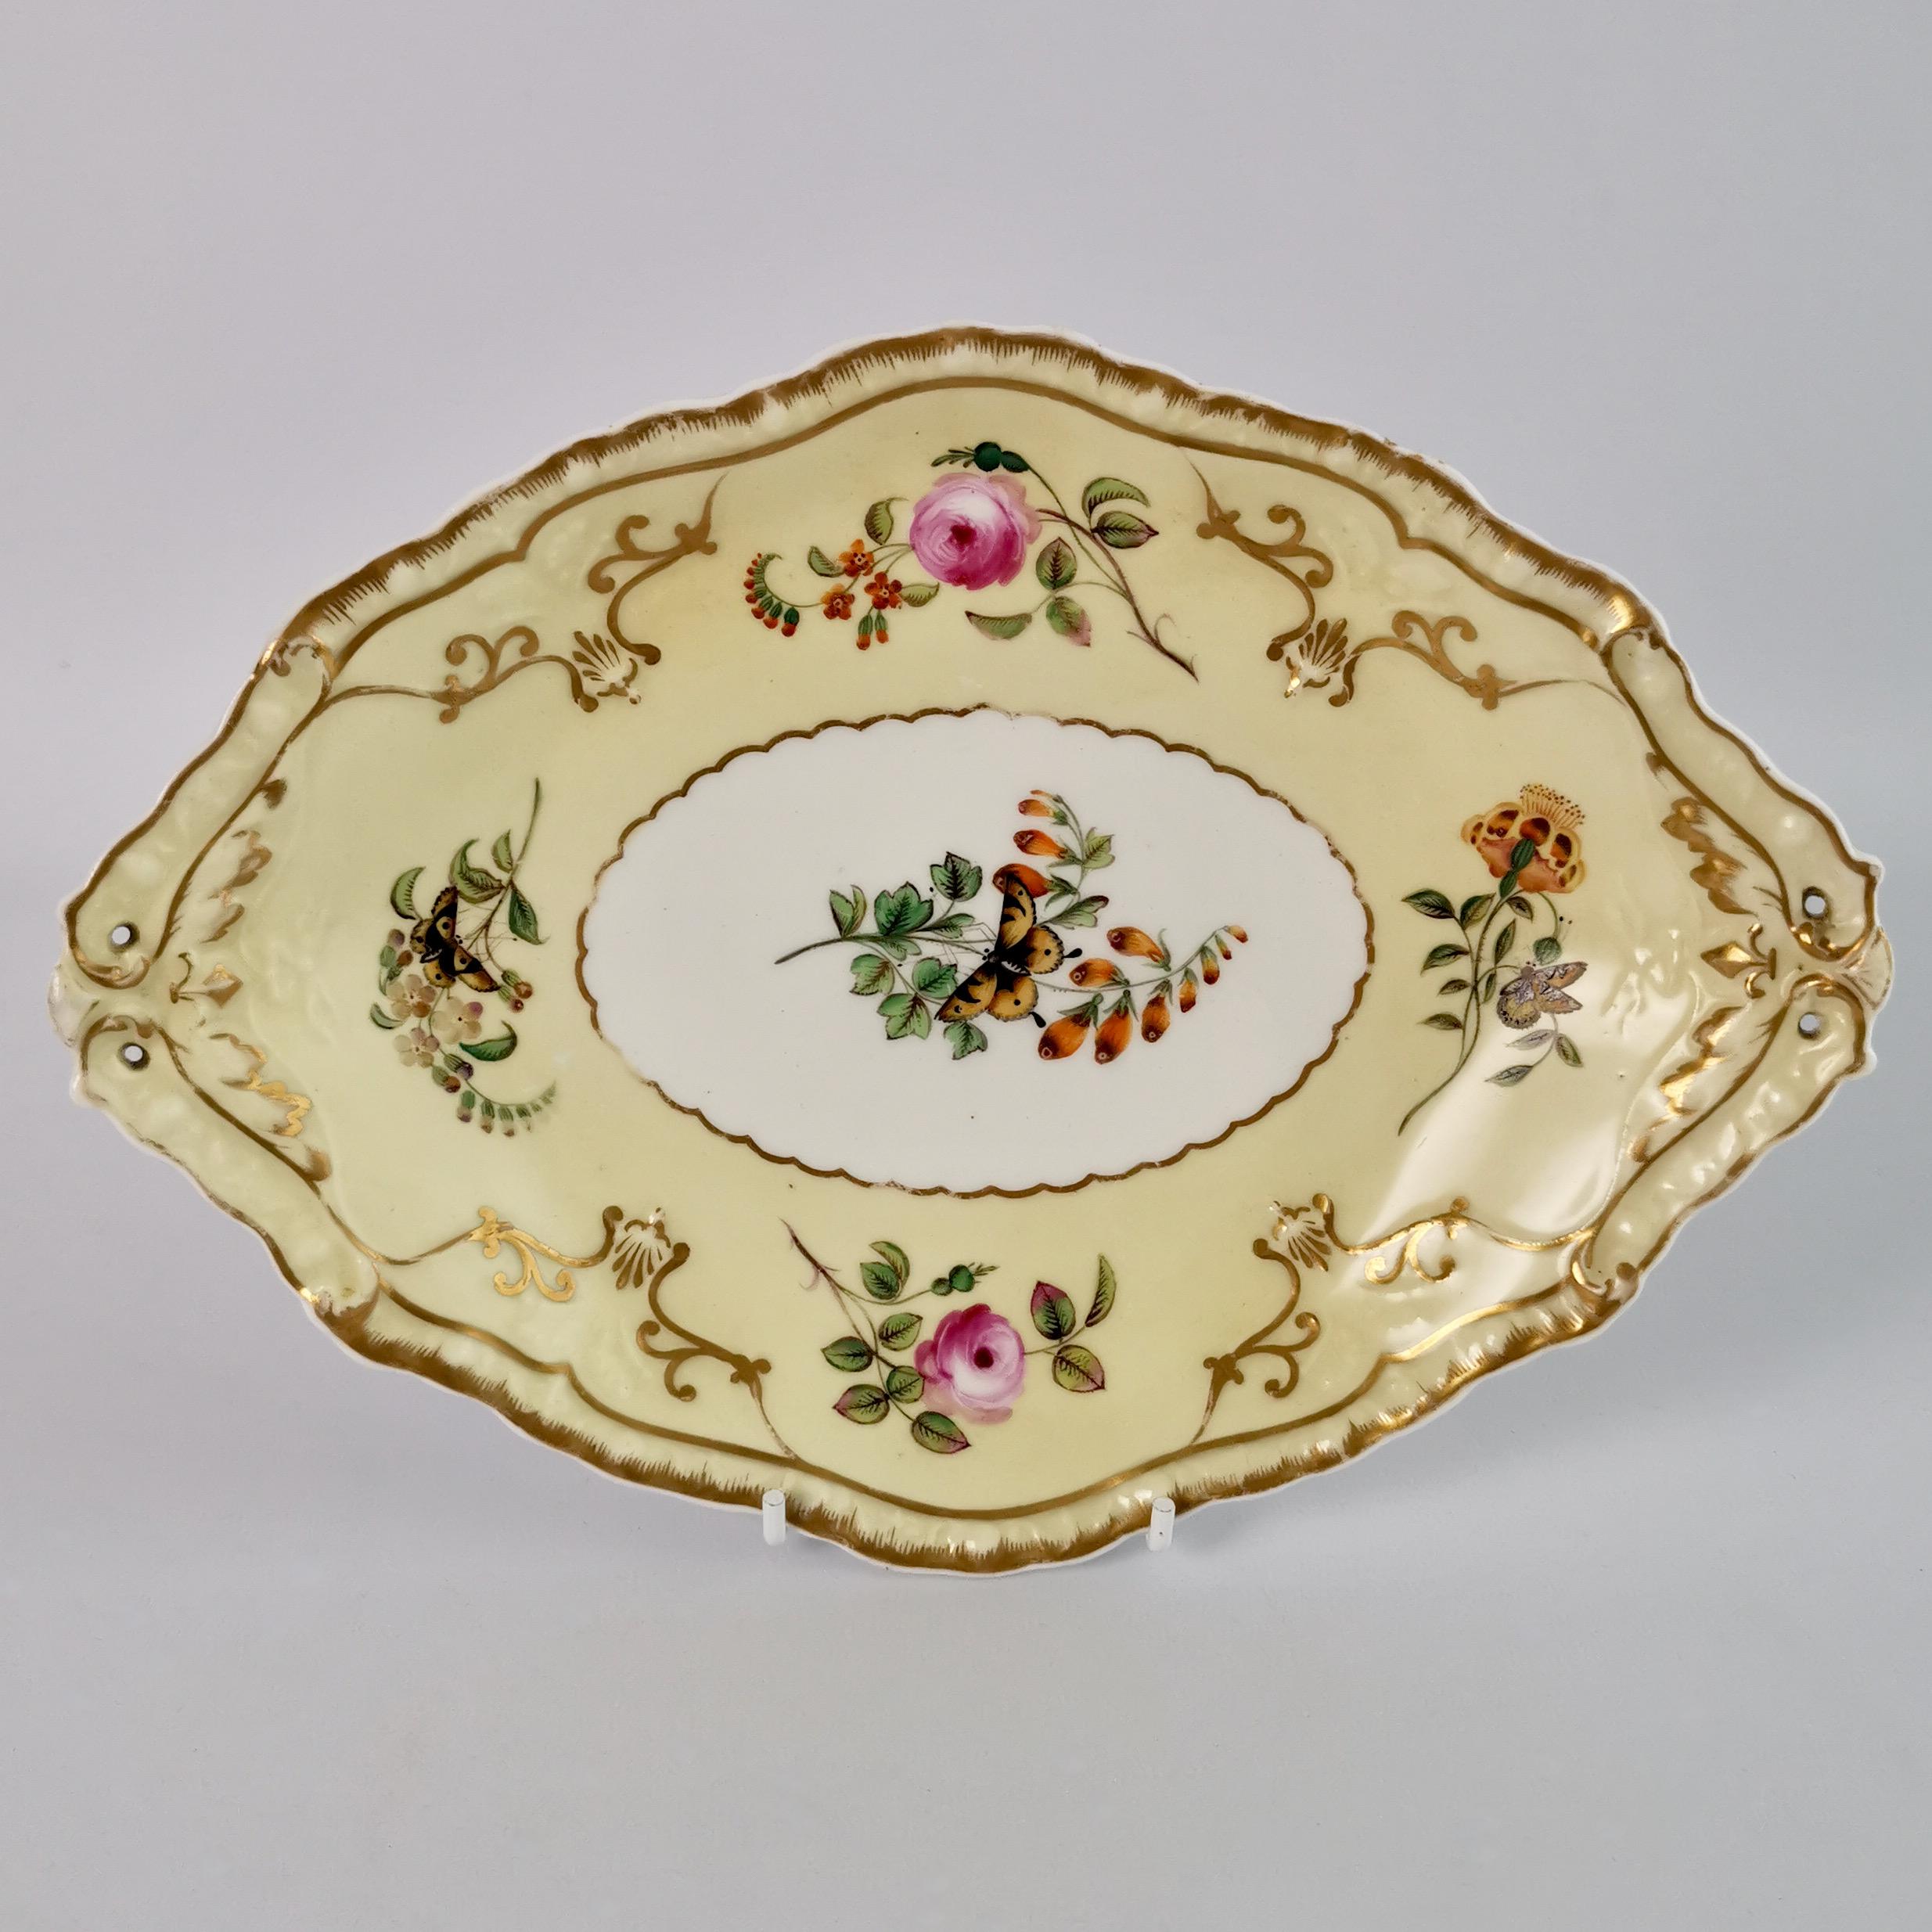 Hand-Painted Copeland & Garrett Porcelain Dessert Set, Yellow with Butterflies, 1833-1847